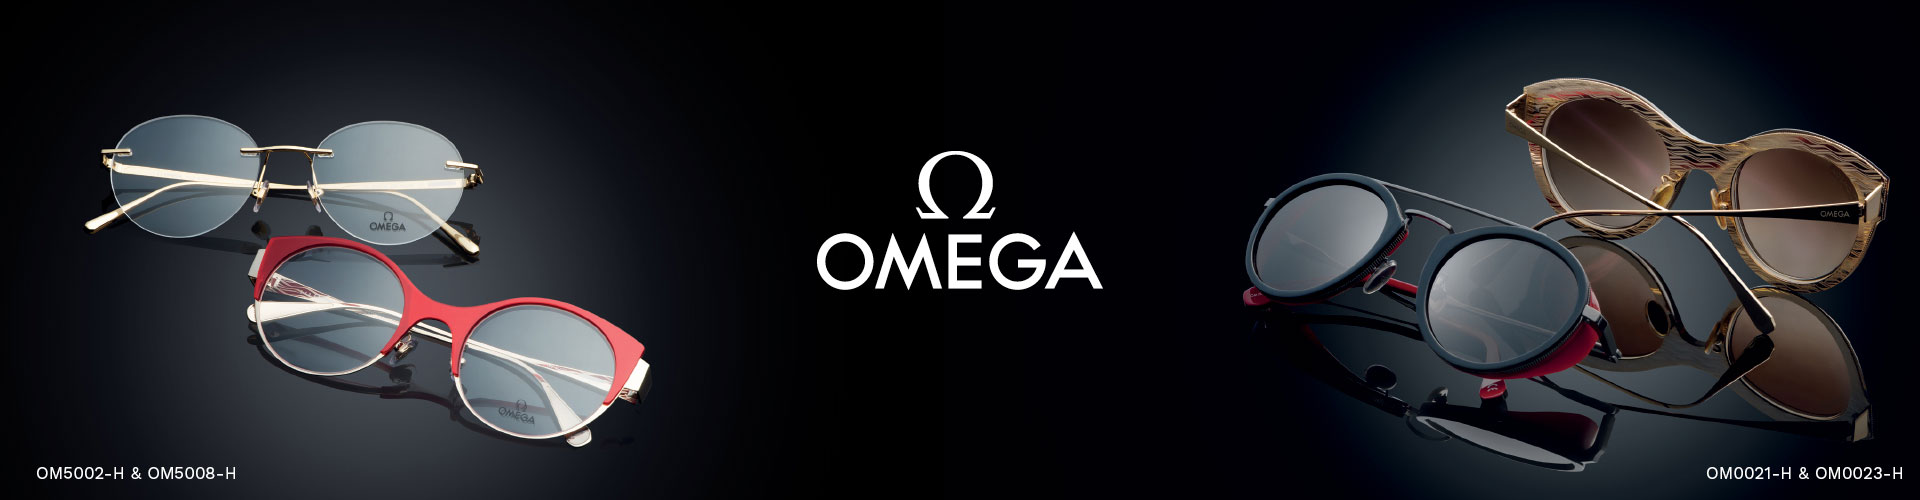 Shop Omega Eyeglasses - featuring OM5008-H